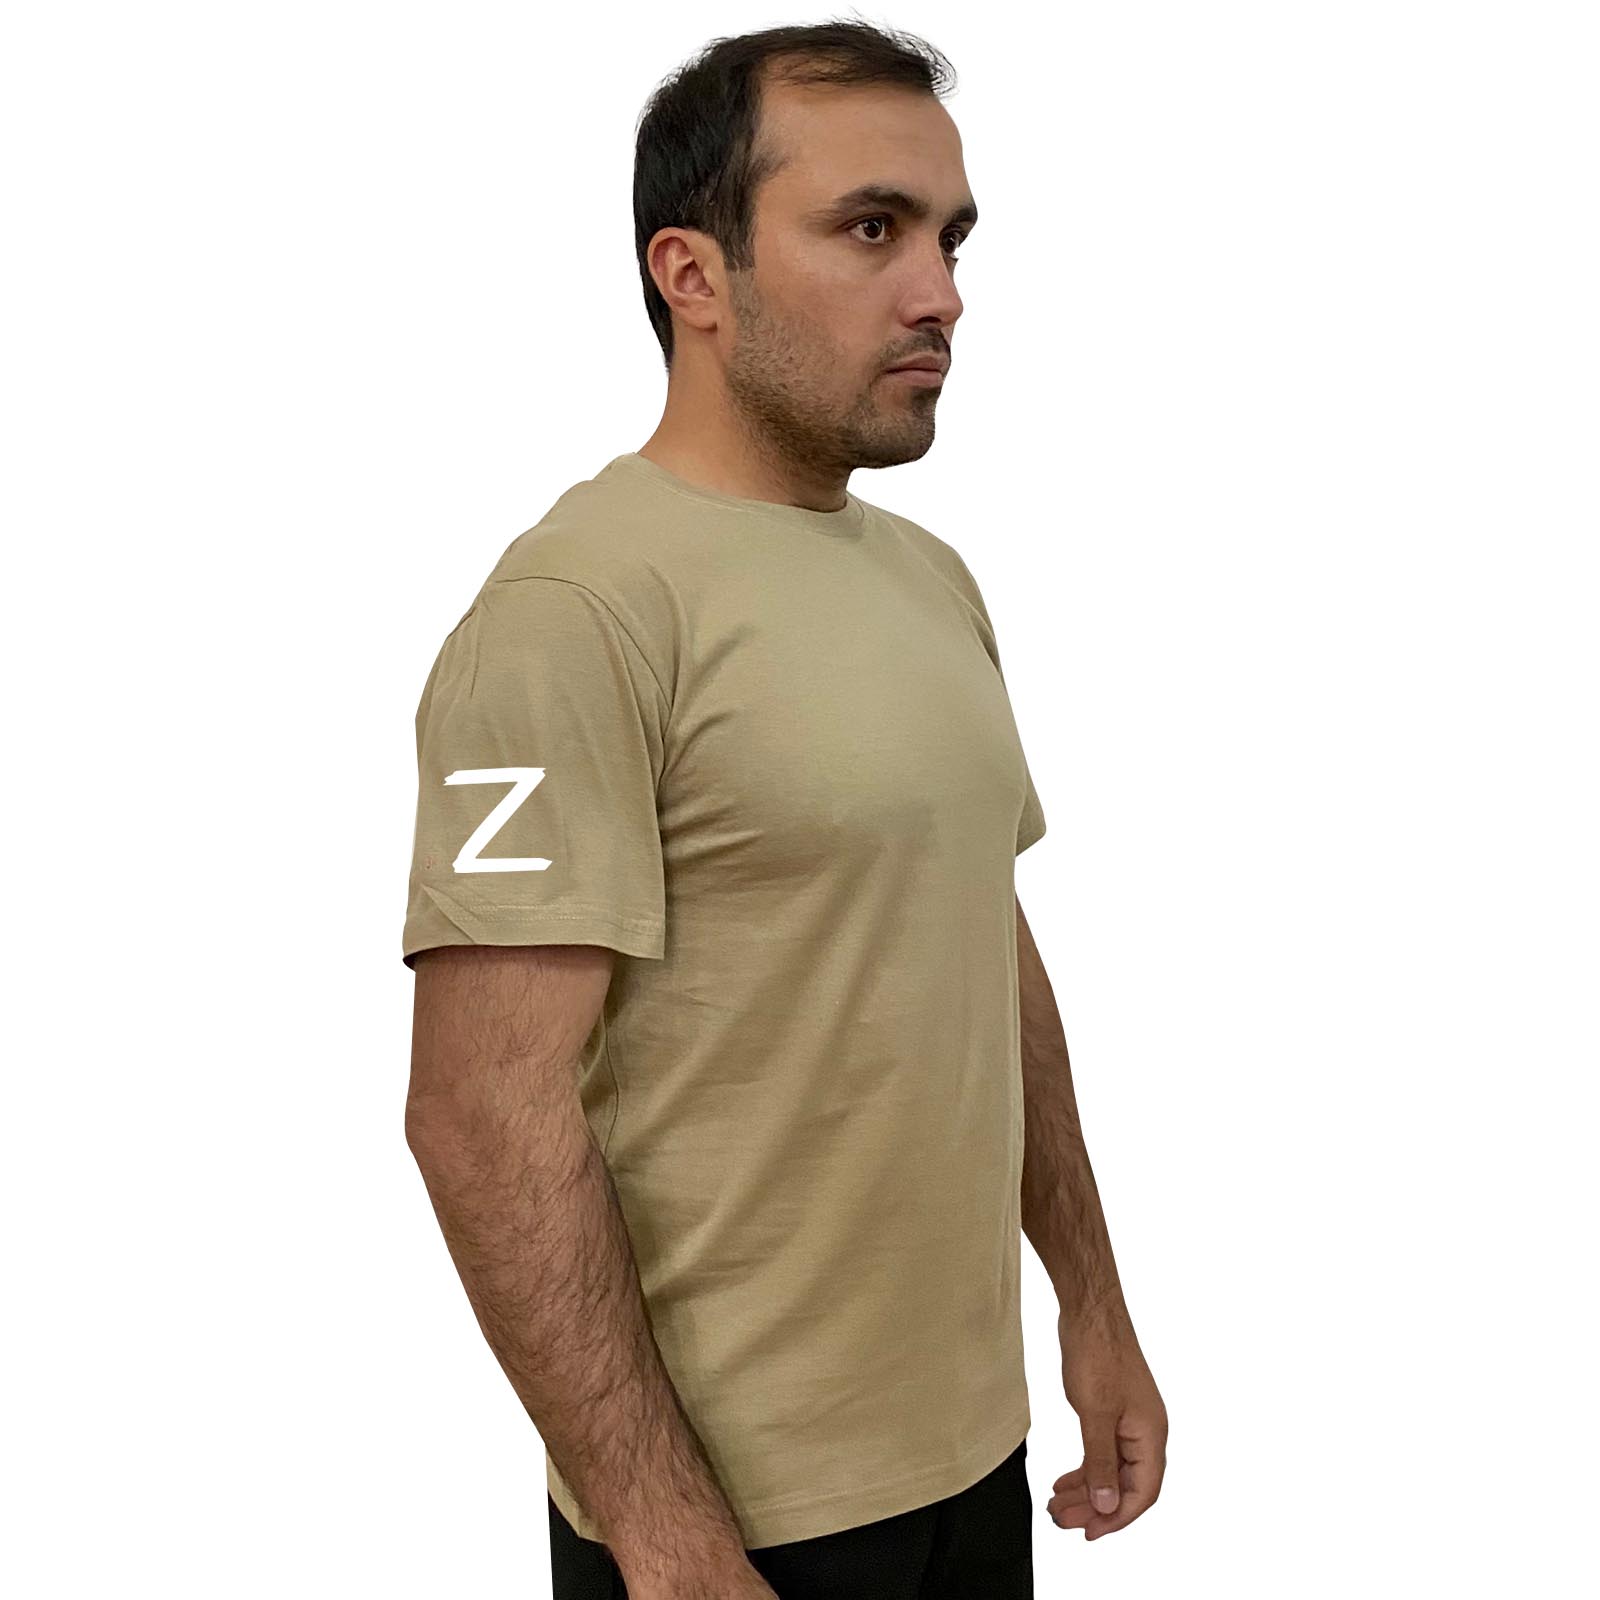 Купить топовую хлопковую футболку с литерой Z выгодно